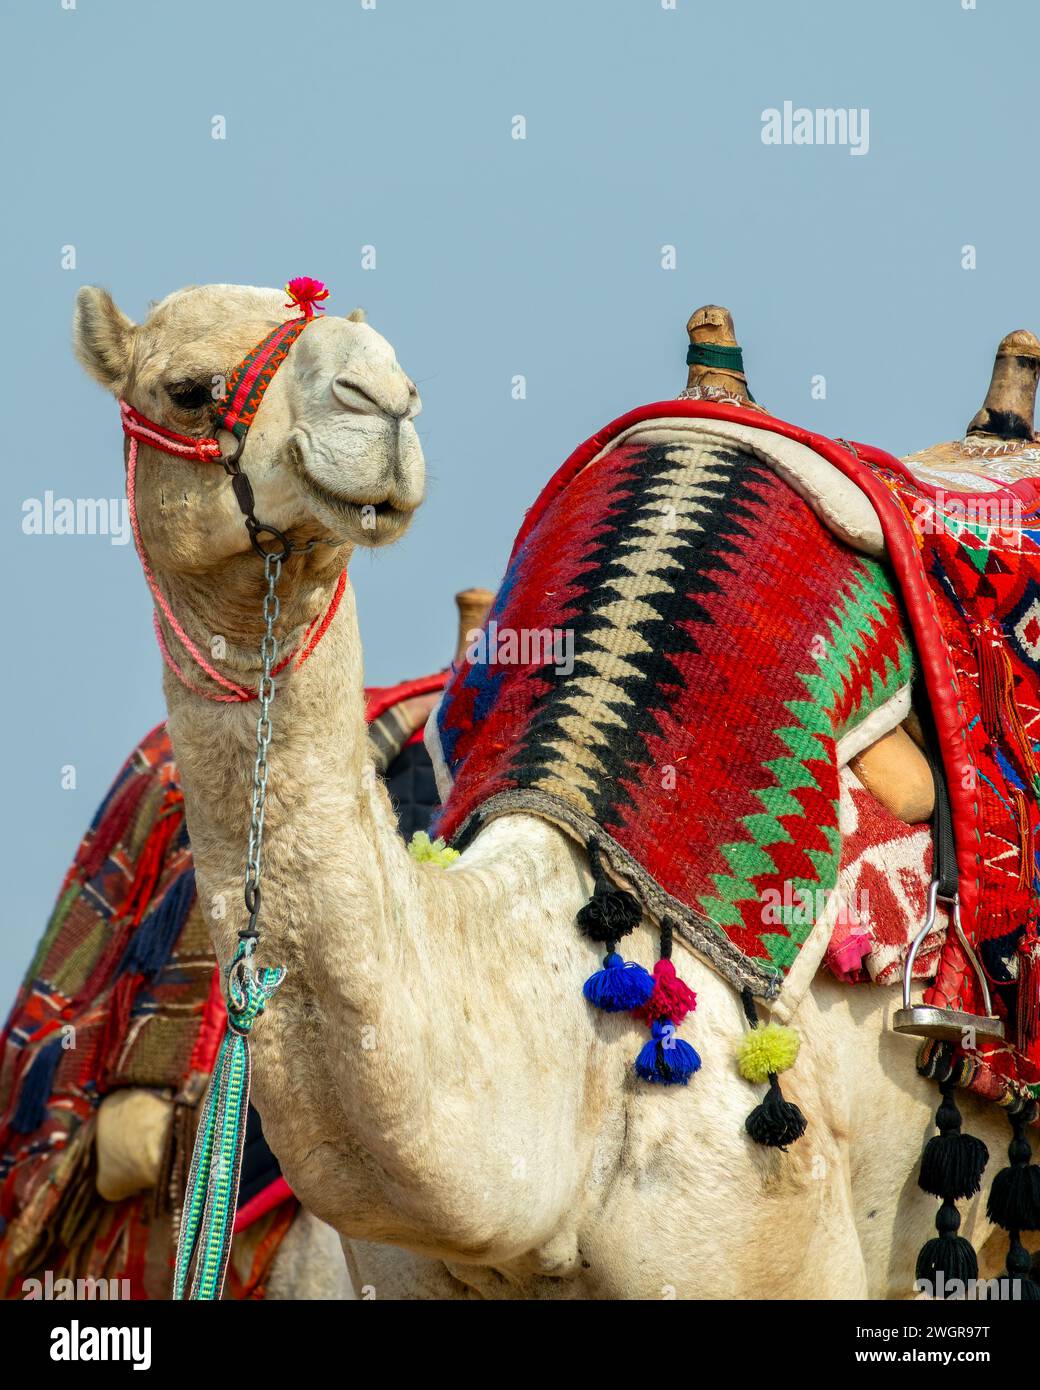 Portrait d'un chameau avec un harnais de tradition coloré dans les anciennes pyramides égyptiennes de Gizeh près du Caire, Egypte Banque D'Images